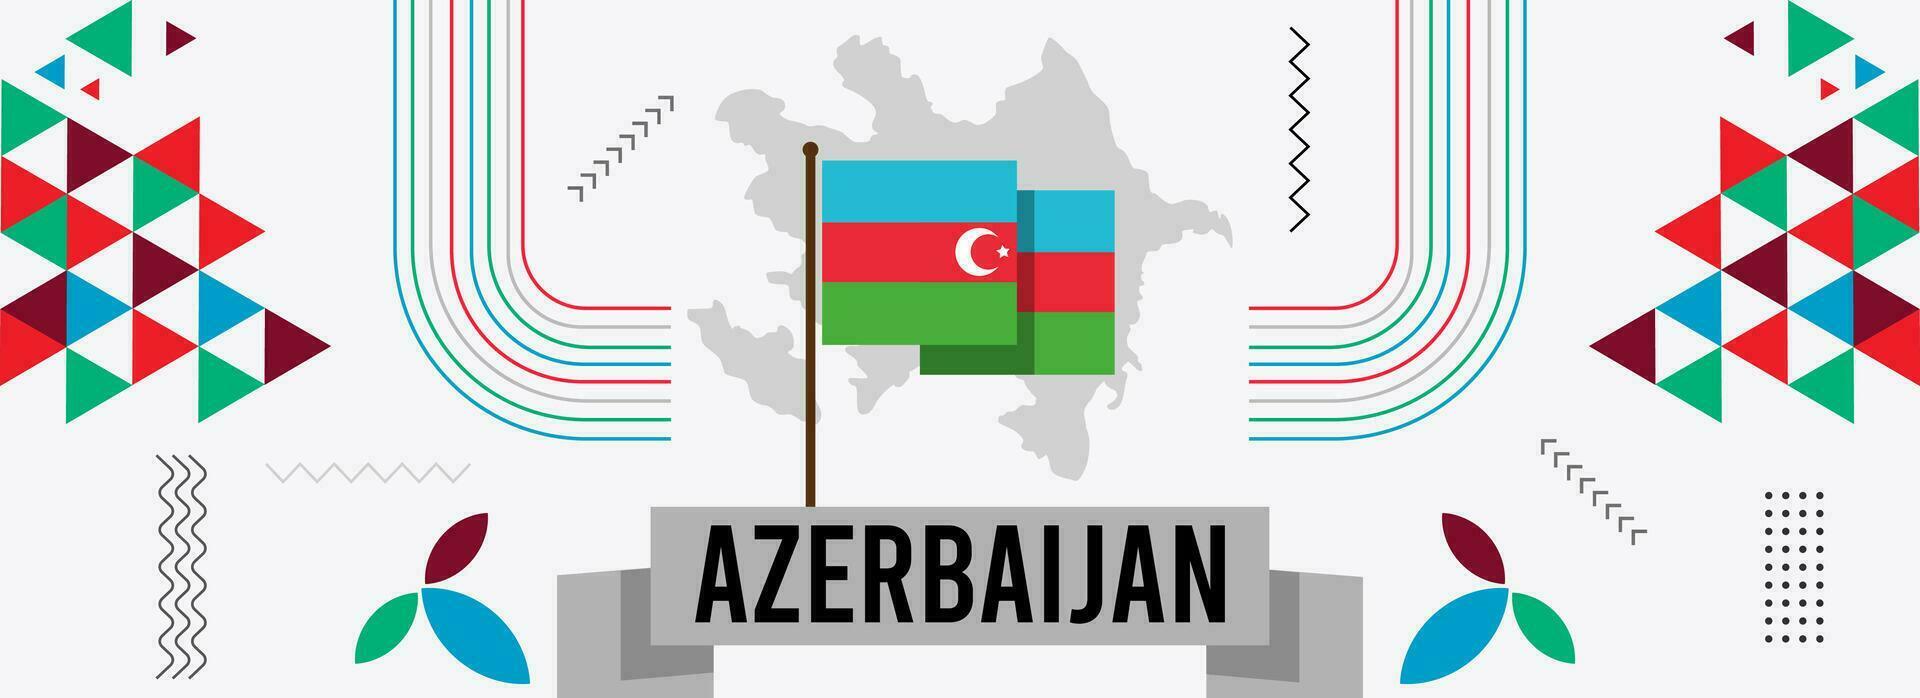 Azerbeidzjan nationaal dag banier of kaart met Azerbeidzjaans kaart, abstract retro modern meetkundig ontwerp met vlag kleuren thema achtergrond vector